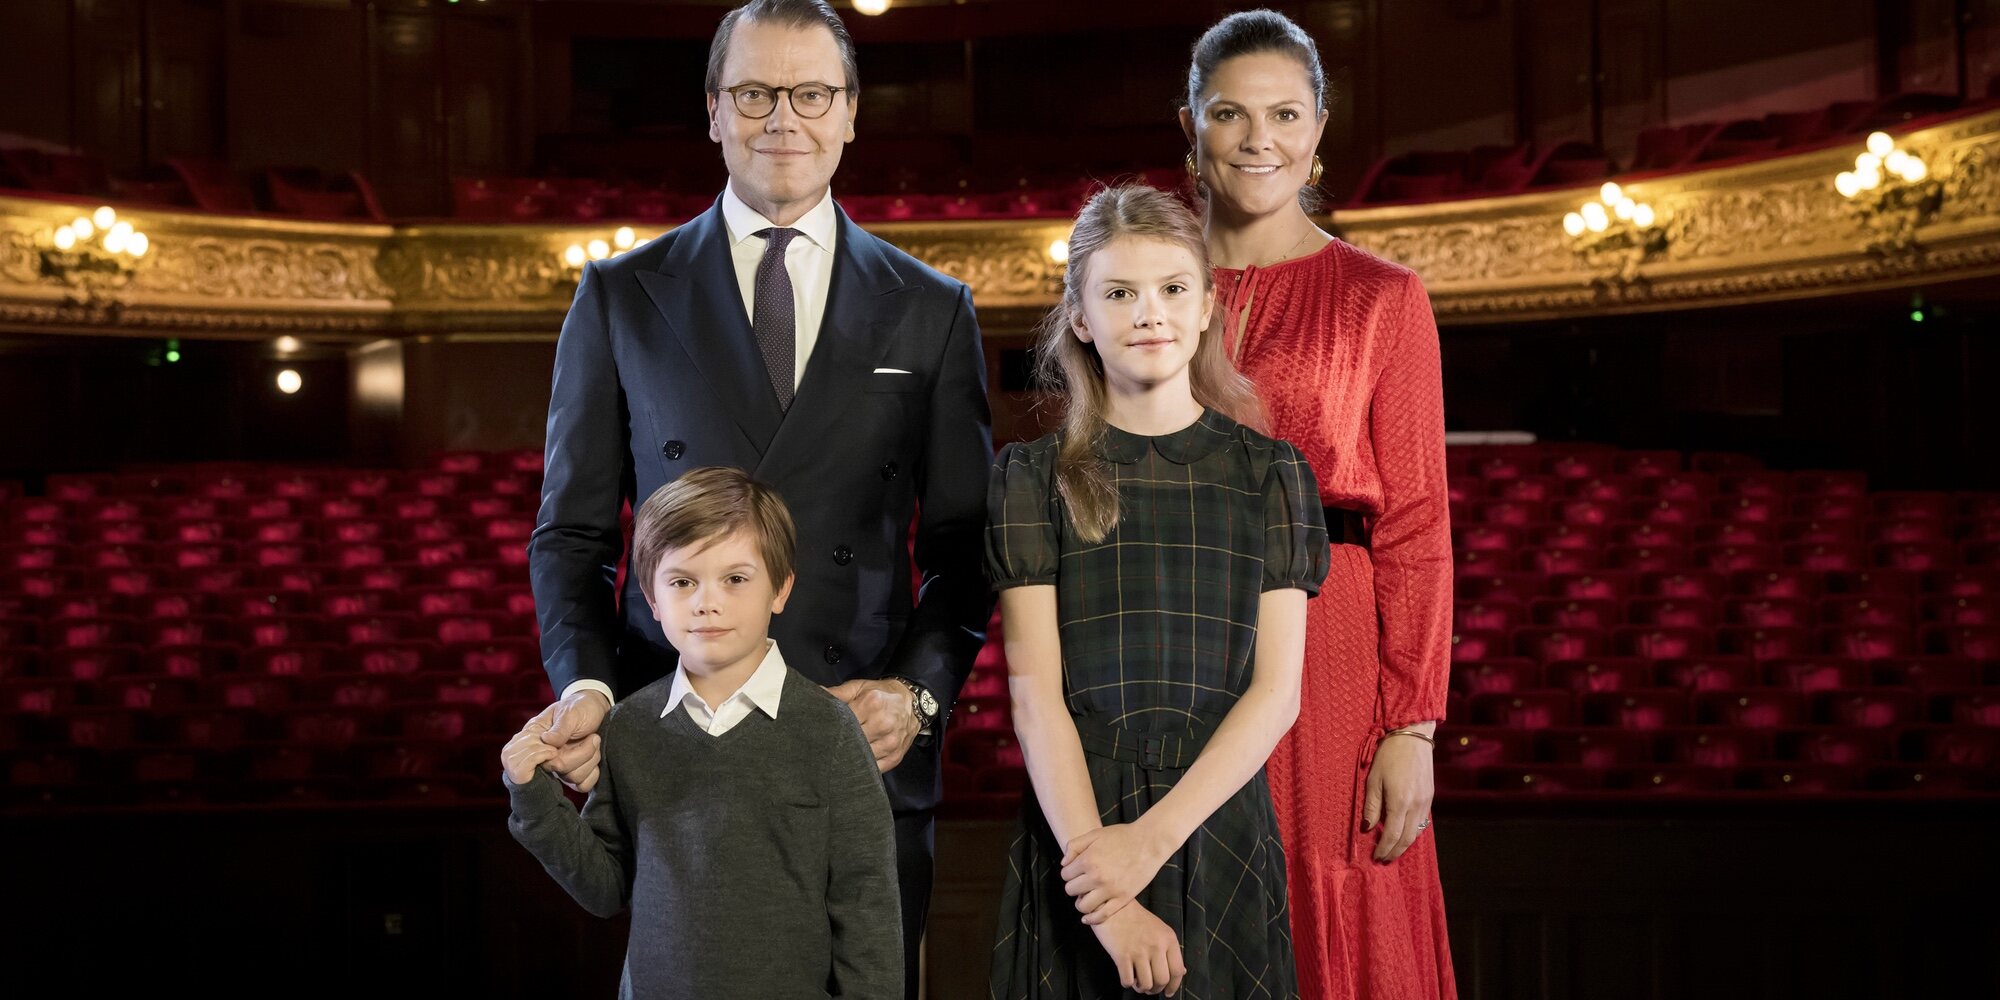 Victoria de Suecia se sincera sobre sus hijos Estelle y Oscar y lo que le resulta más difícil con ellos